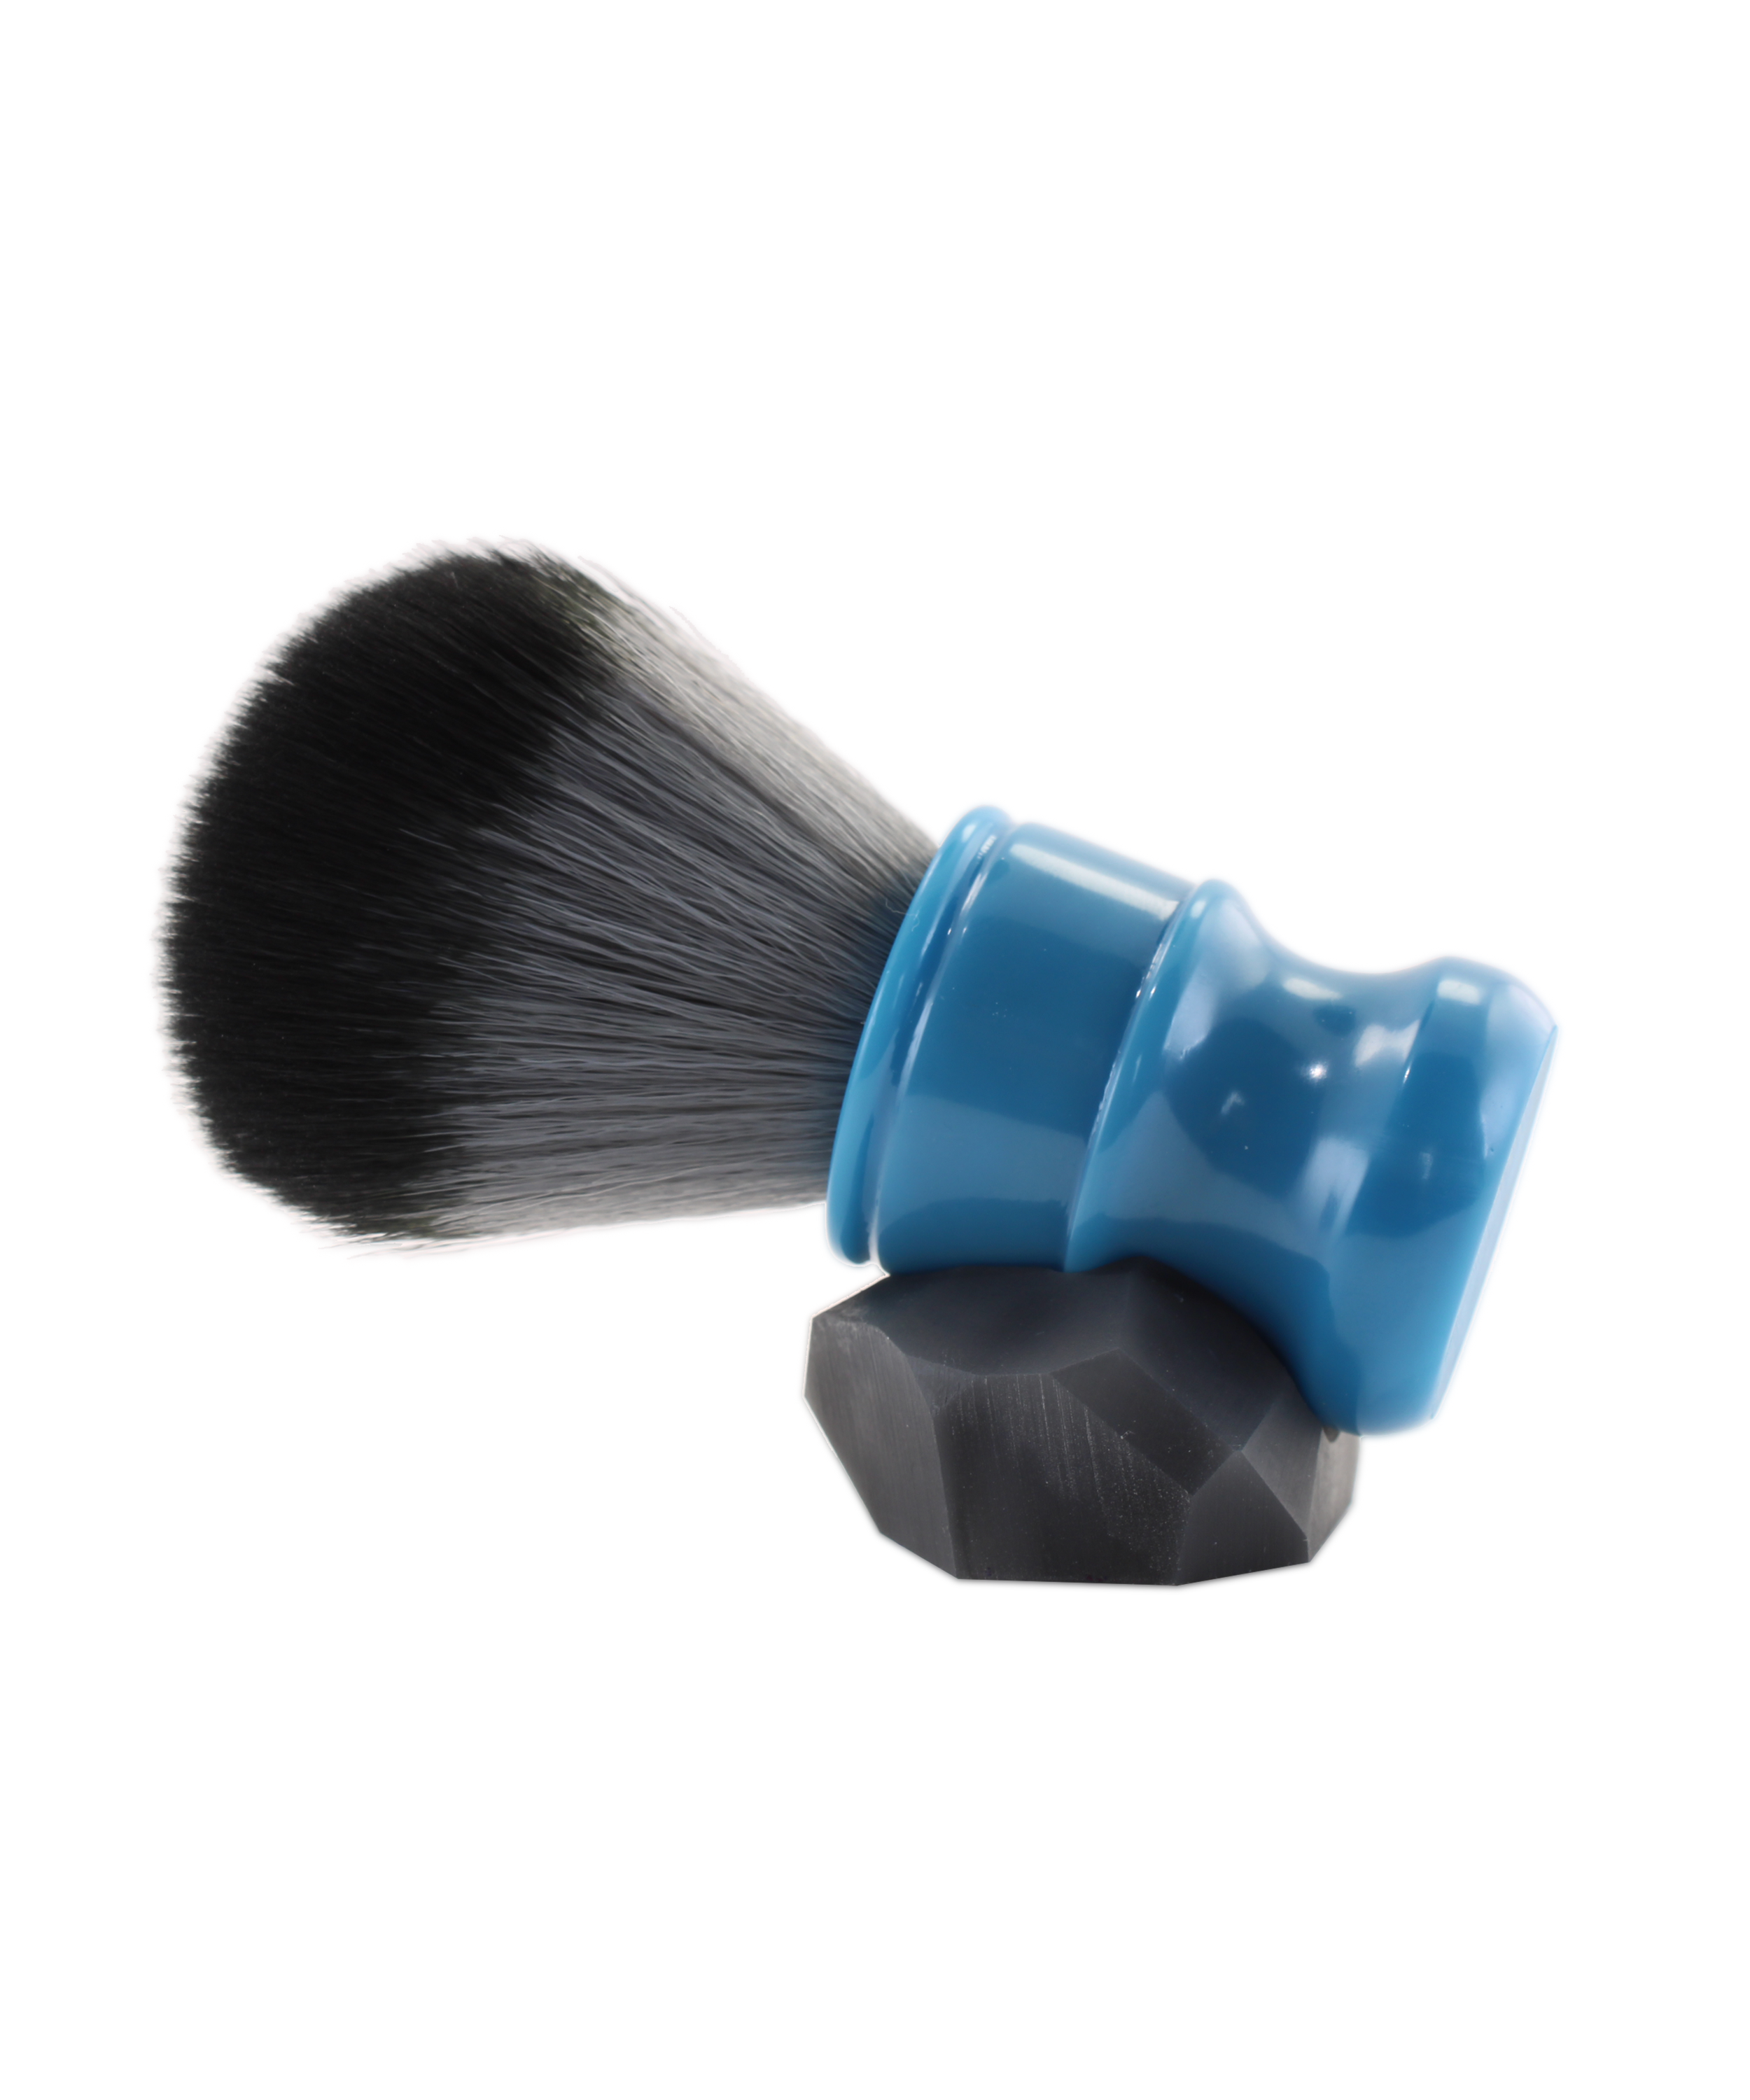 Shaving Brushes - Traditional Shaving Tool Shaving Care